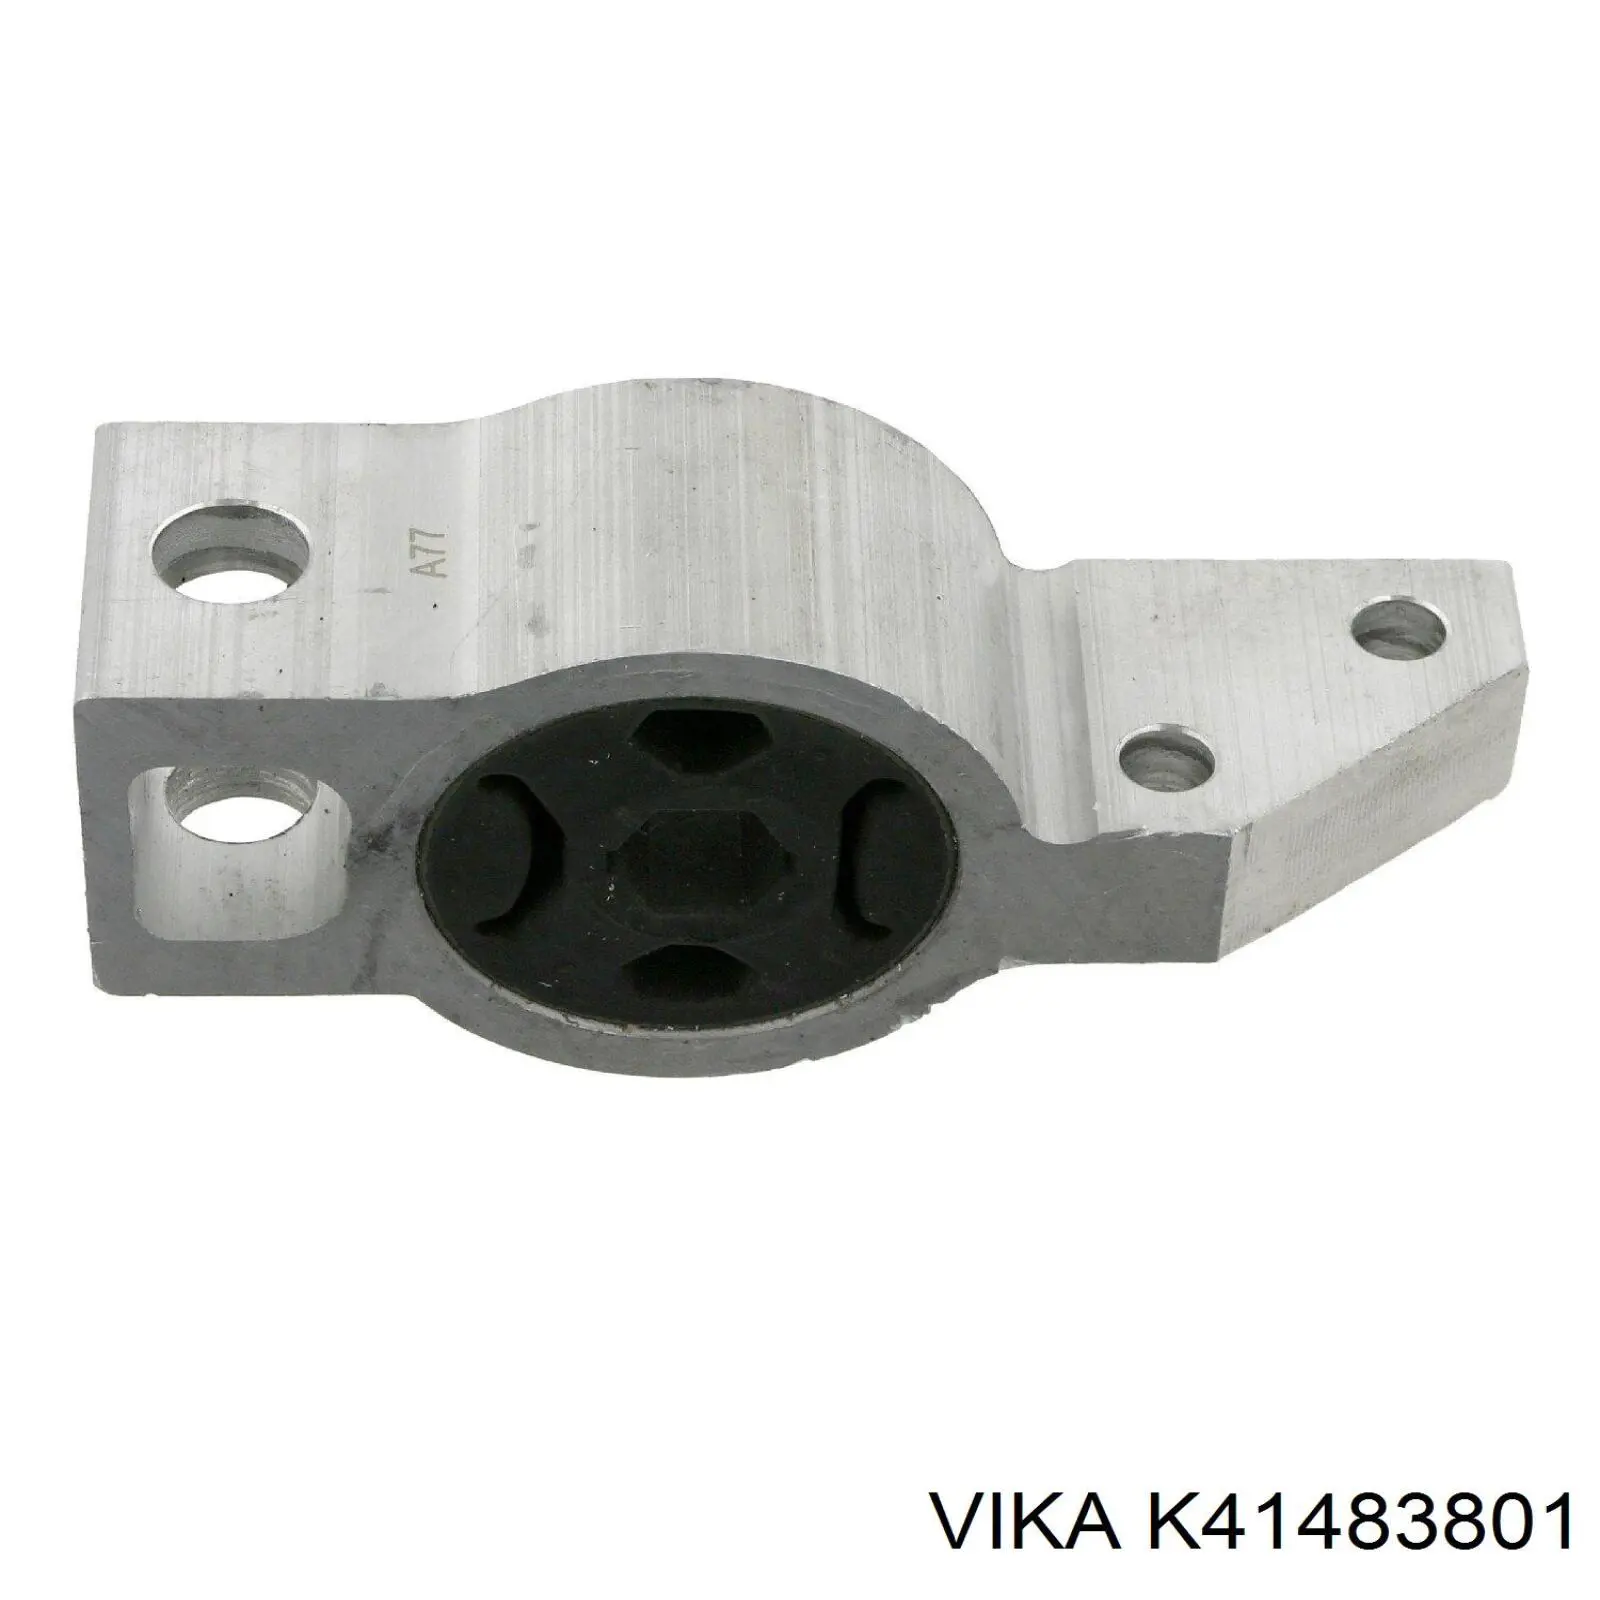 K41483801 Vika kit de reparacion brazo inferior delantero